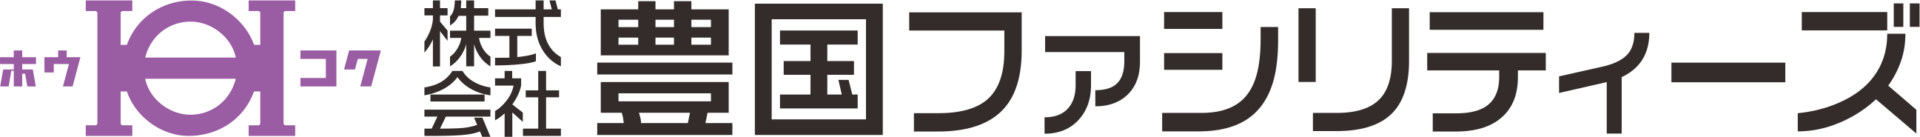 社名logoファシリディーズ